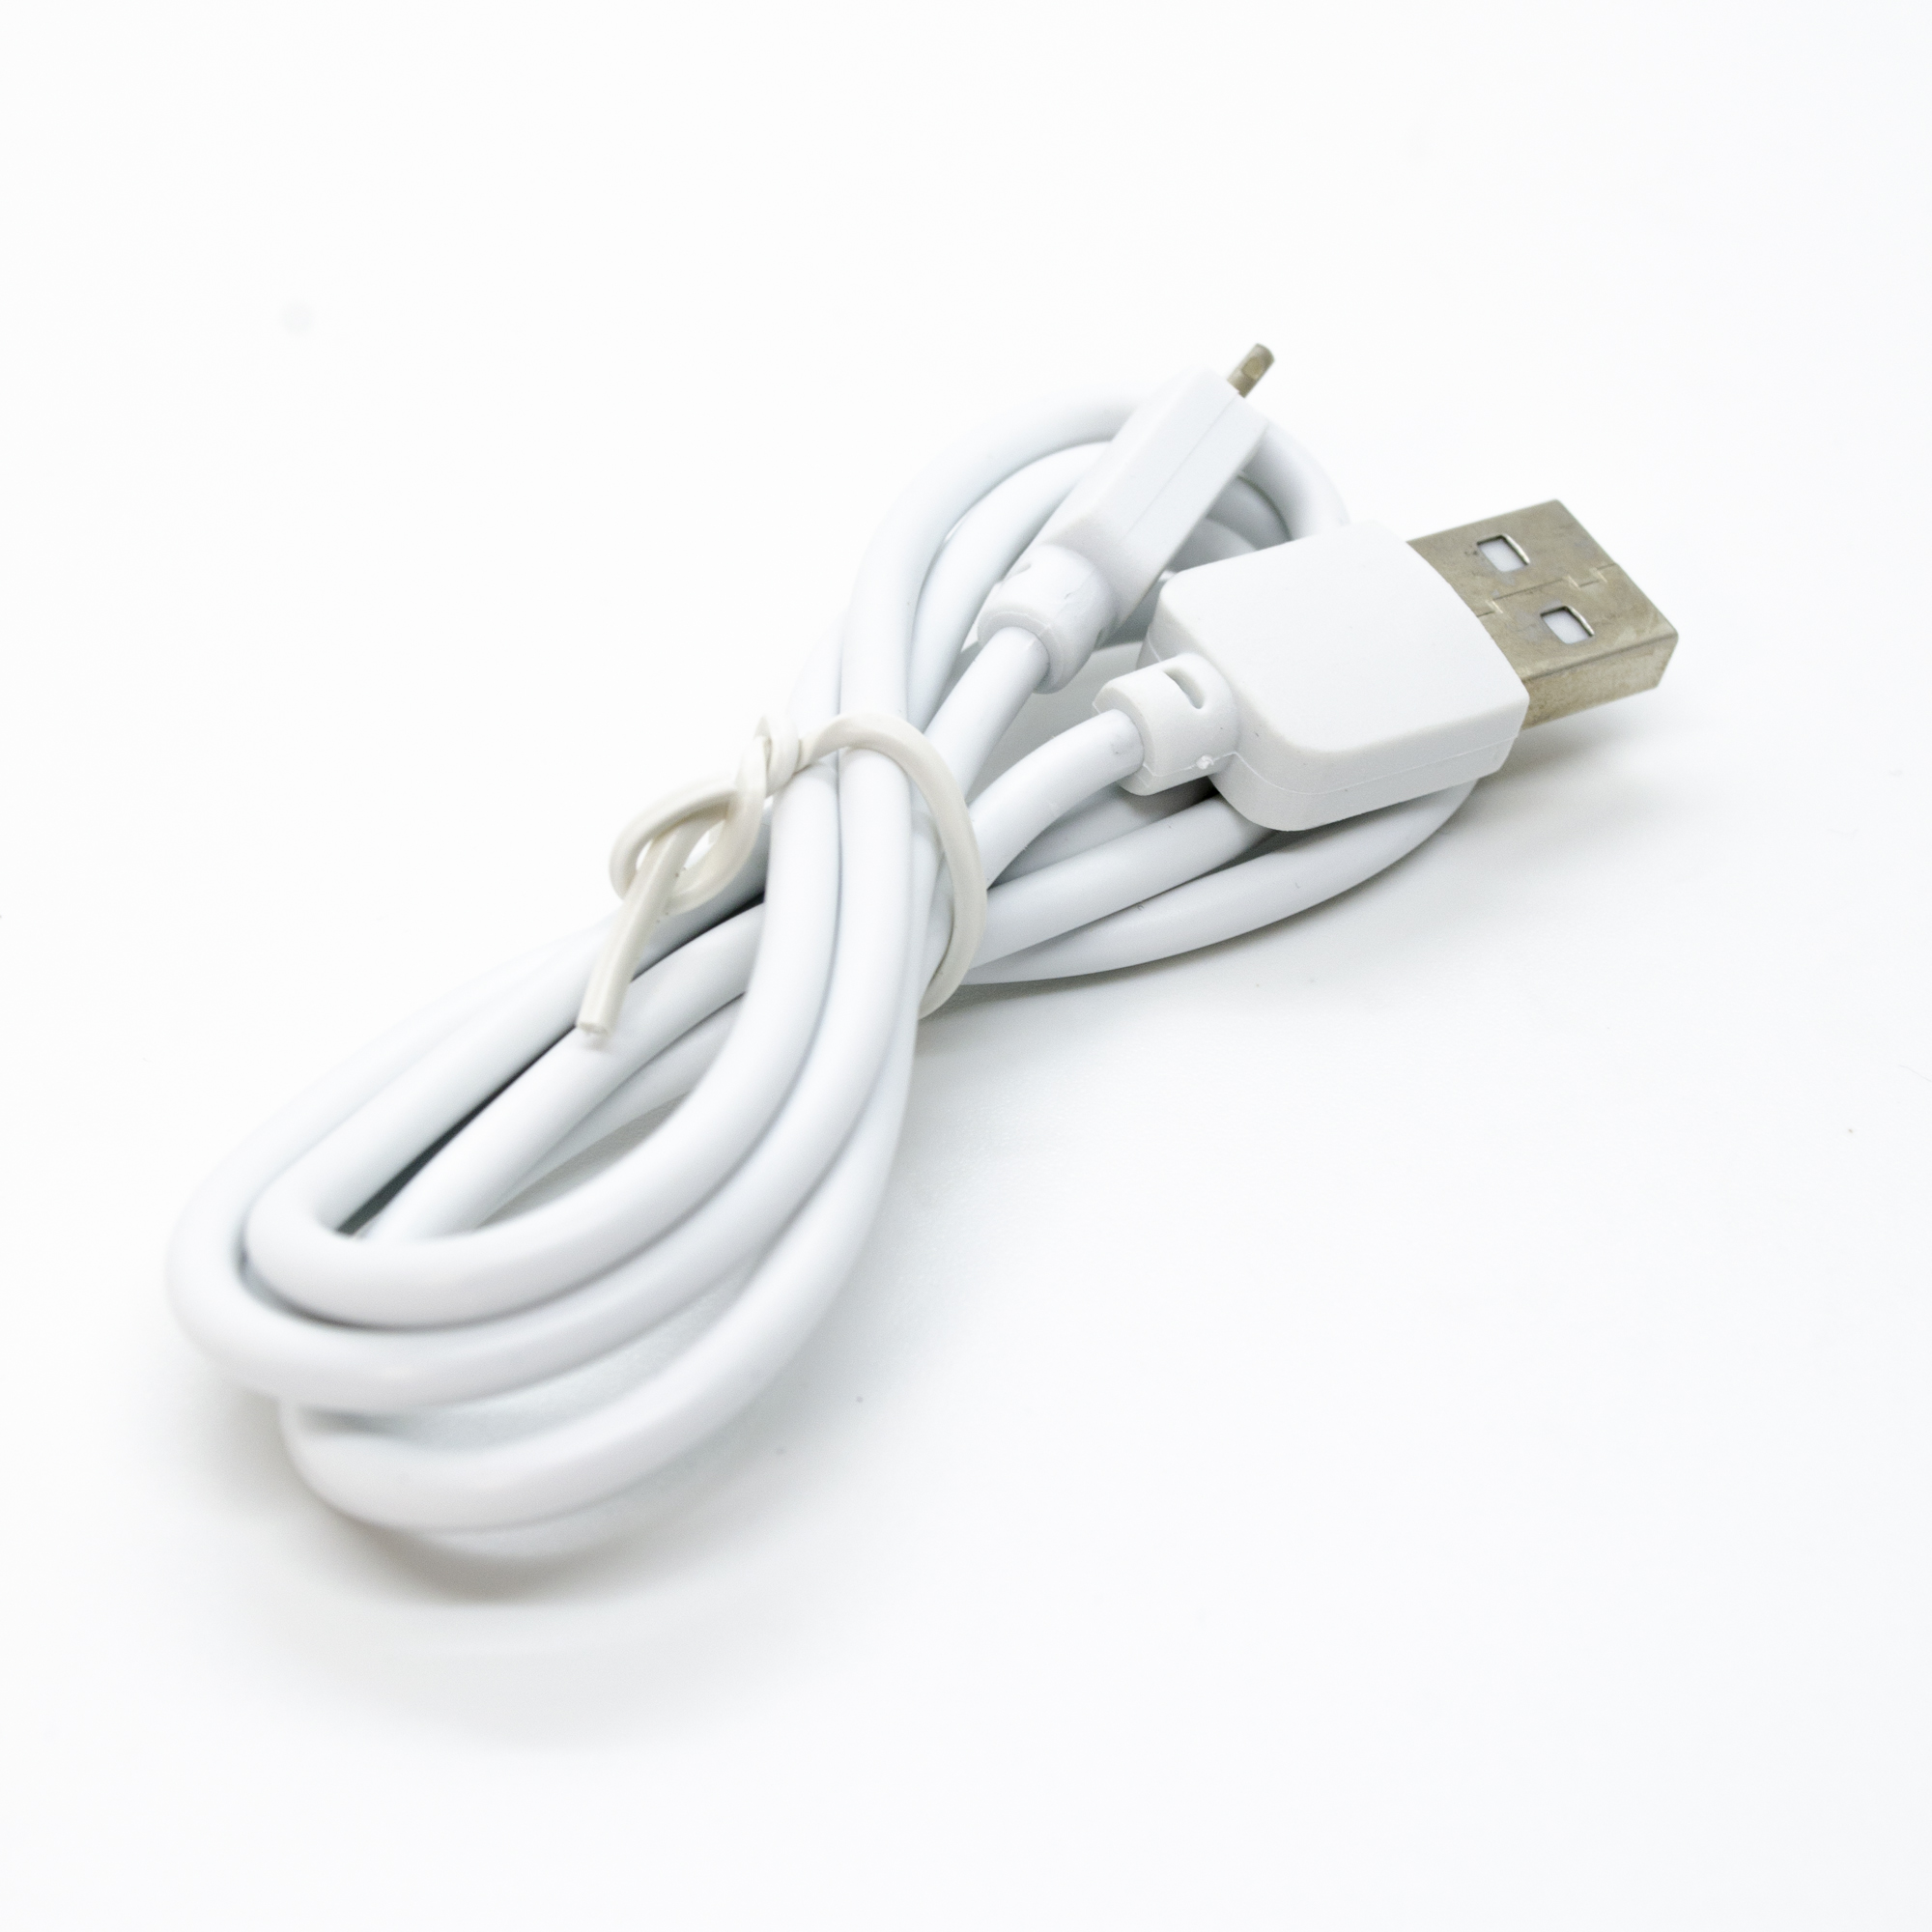 Factor M Lightning İphone Uyumlu Data ve Şarj Kablo 2.4A 1m Beyaz (FMMDKBYZ)